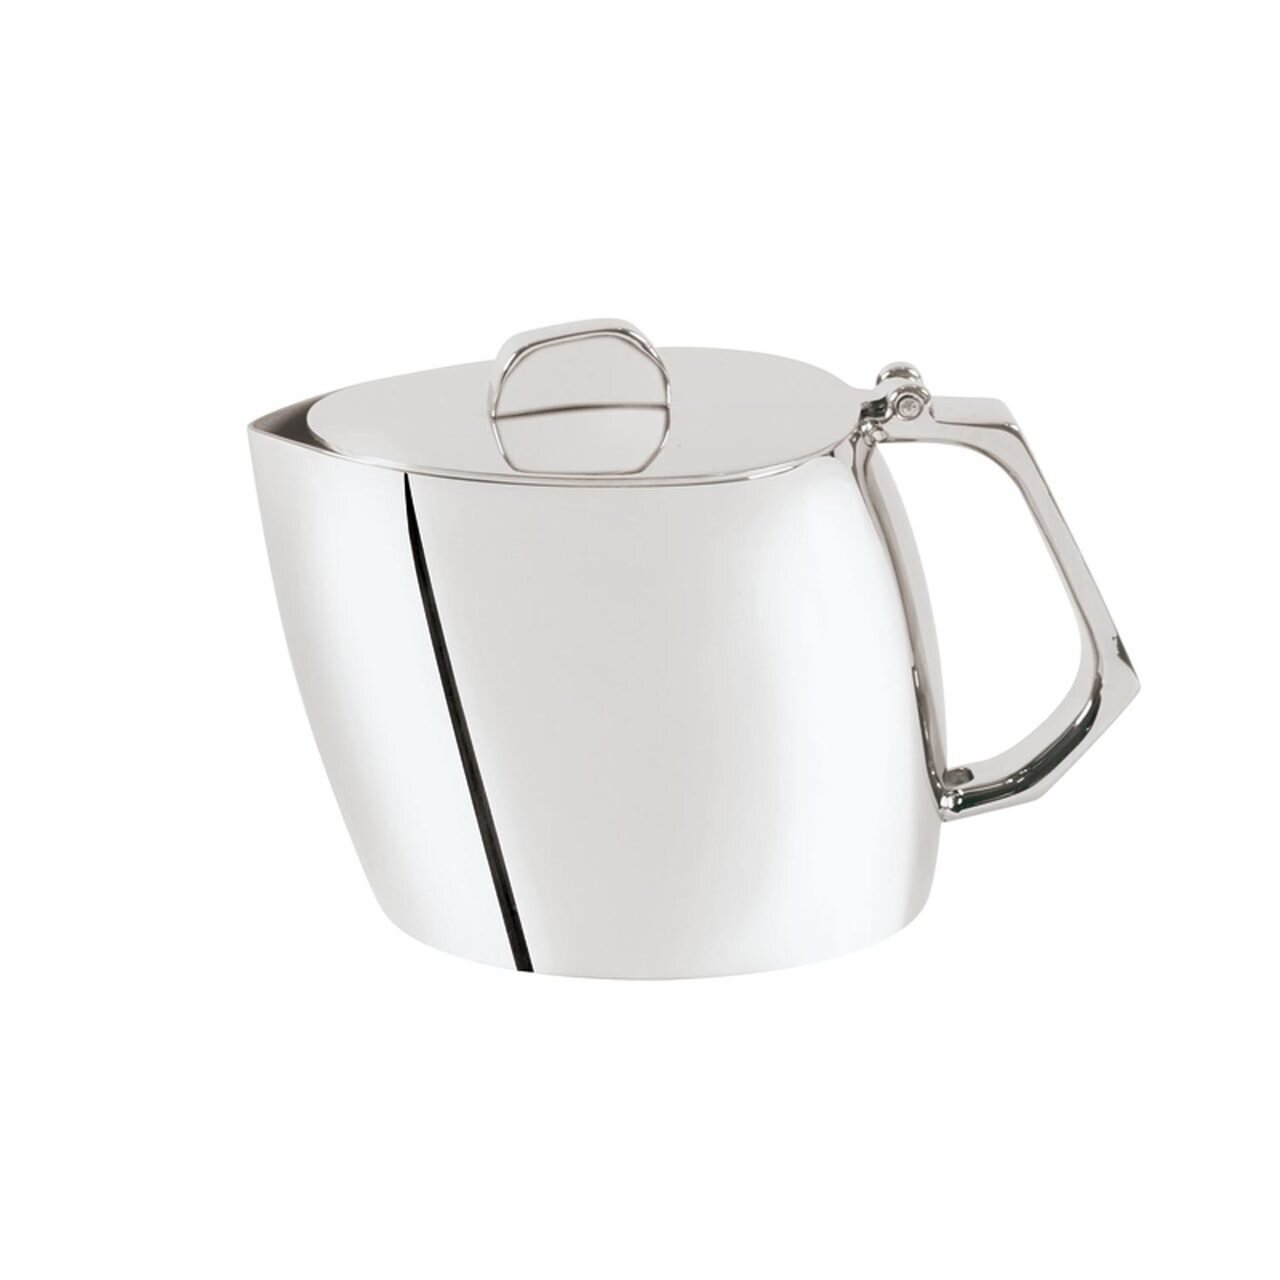 Sambonet Sphera Tea Pot 56908-03